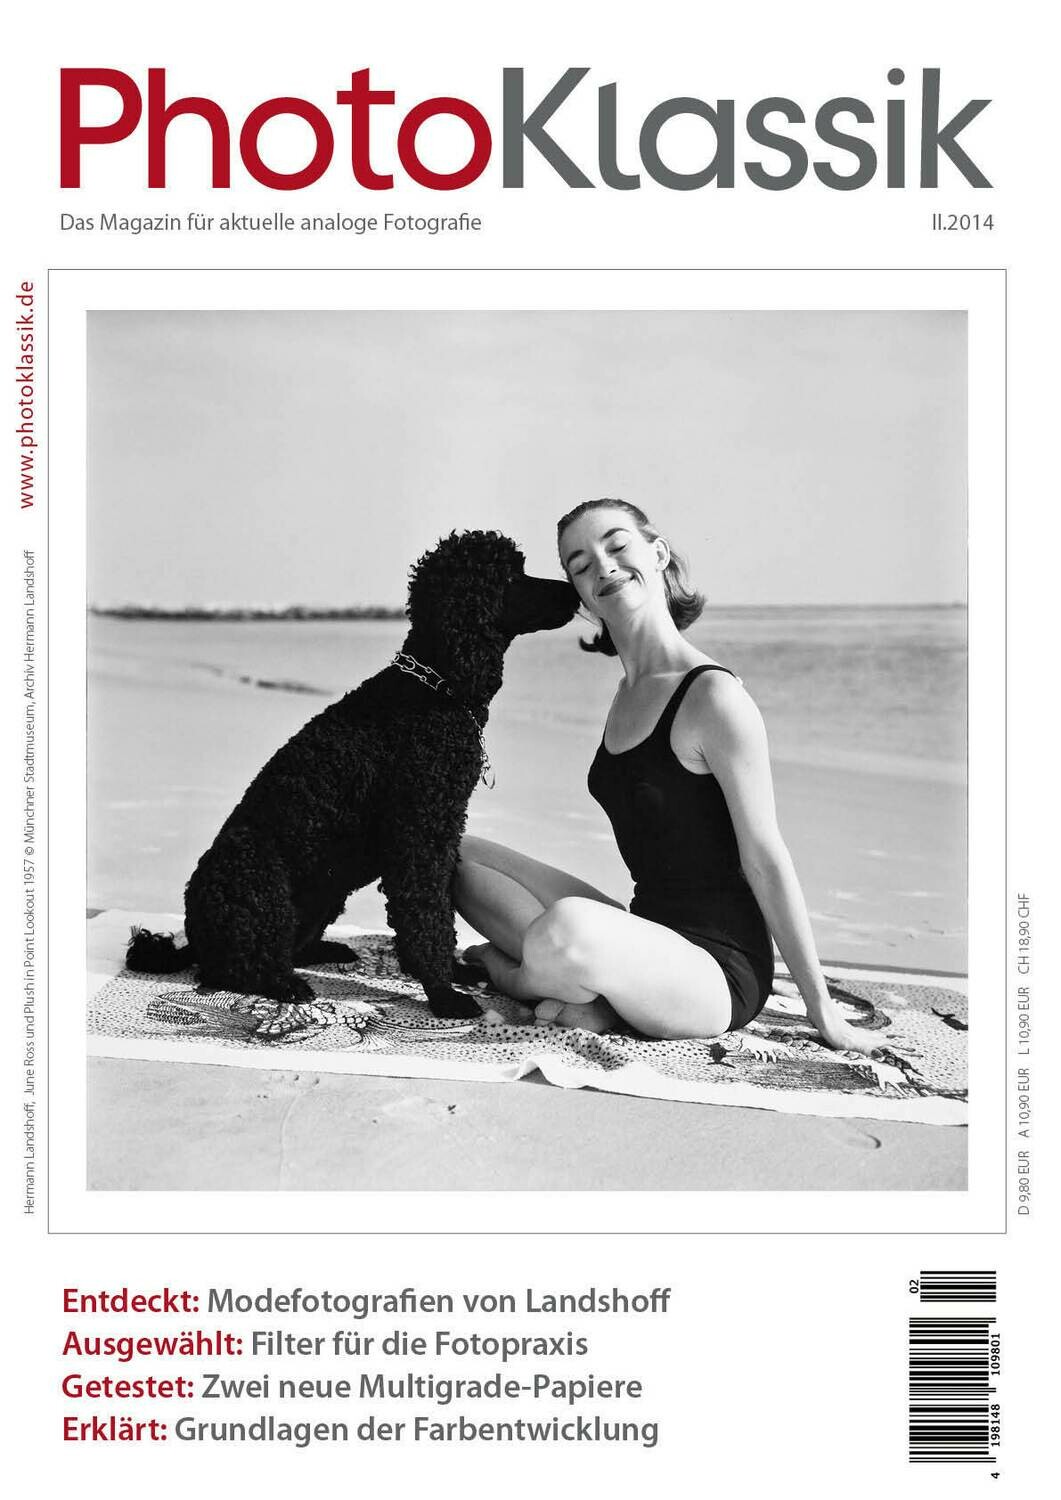 PhotoKlassik: das Magazin für aktuelle analoge Fotografie - Ausgabe II.2014